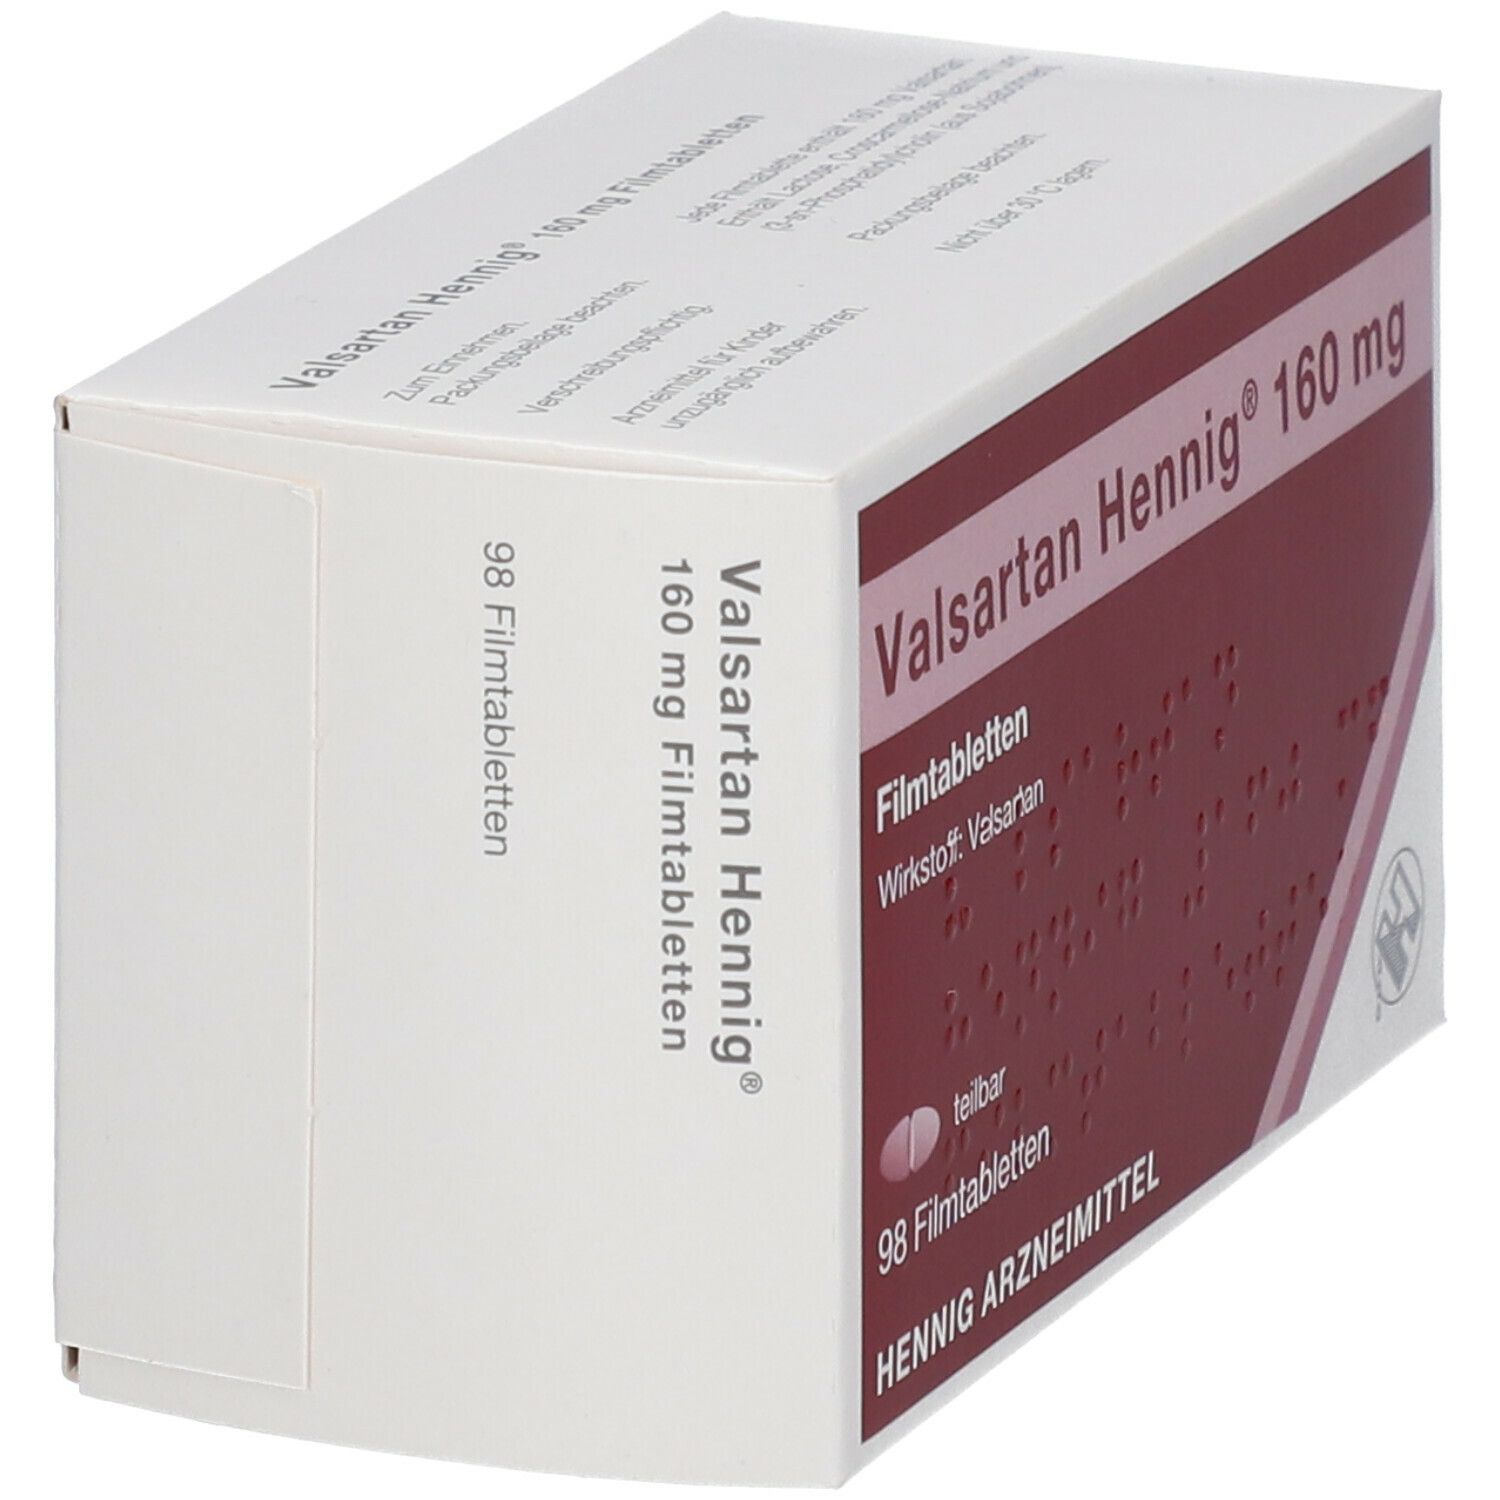 Valsartan Hennig® 160 mg